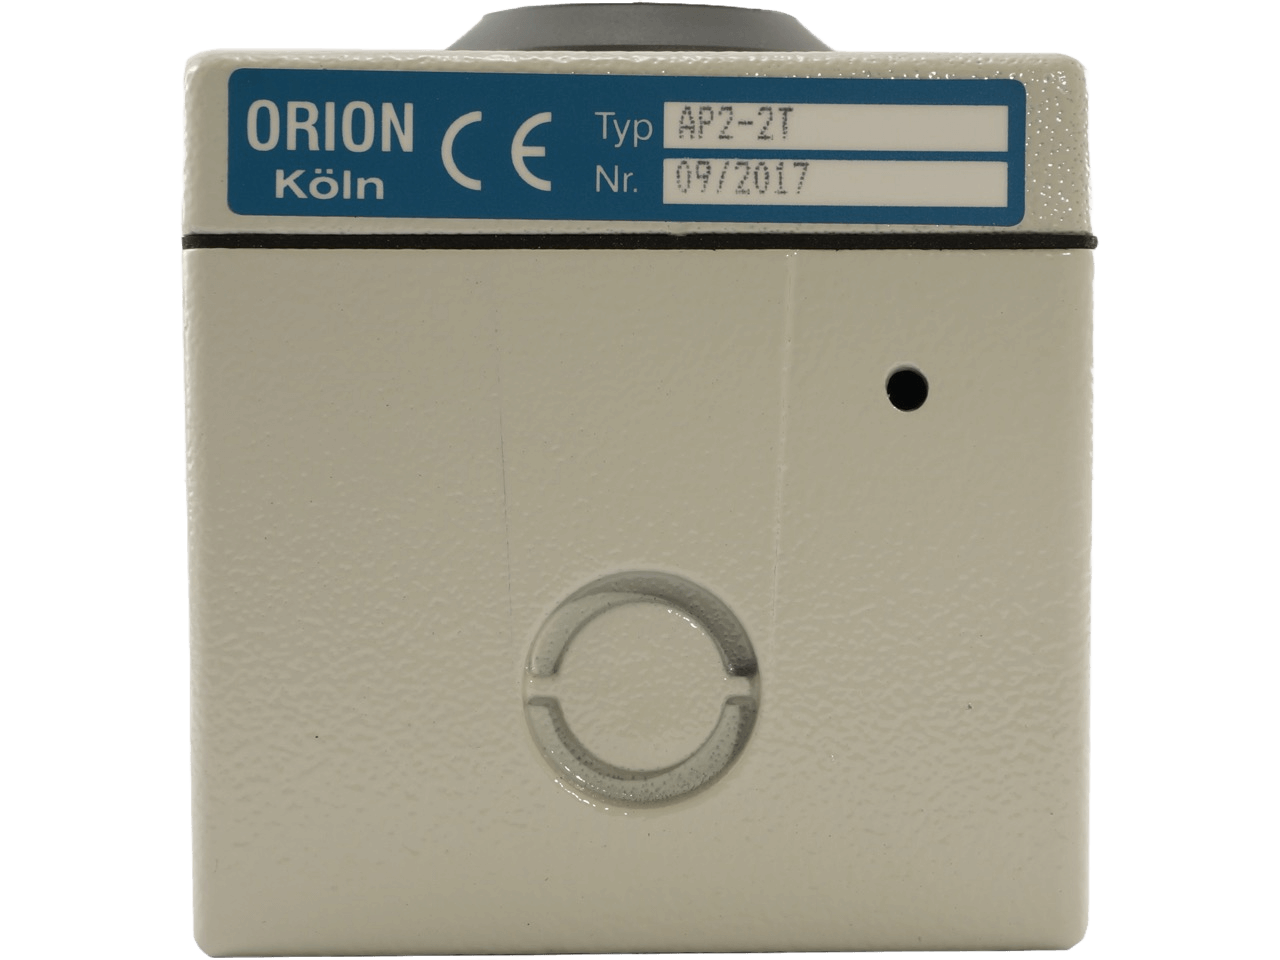 Orion AP 2-2 T Schlüsseltaster Aufputz 2-seitig mit STOP-Taste